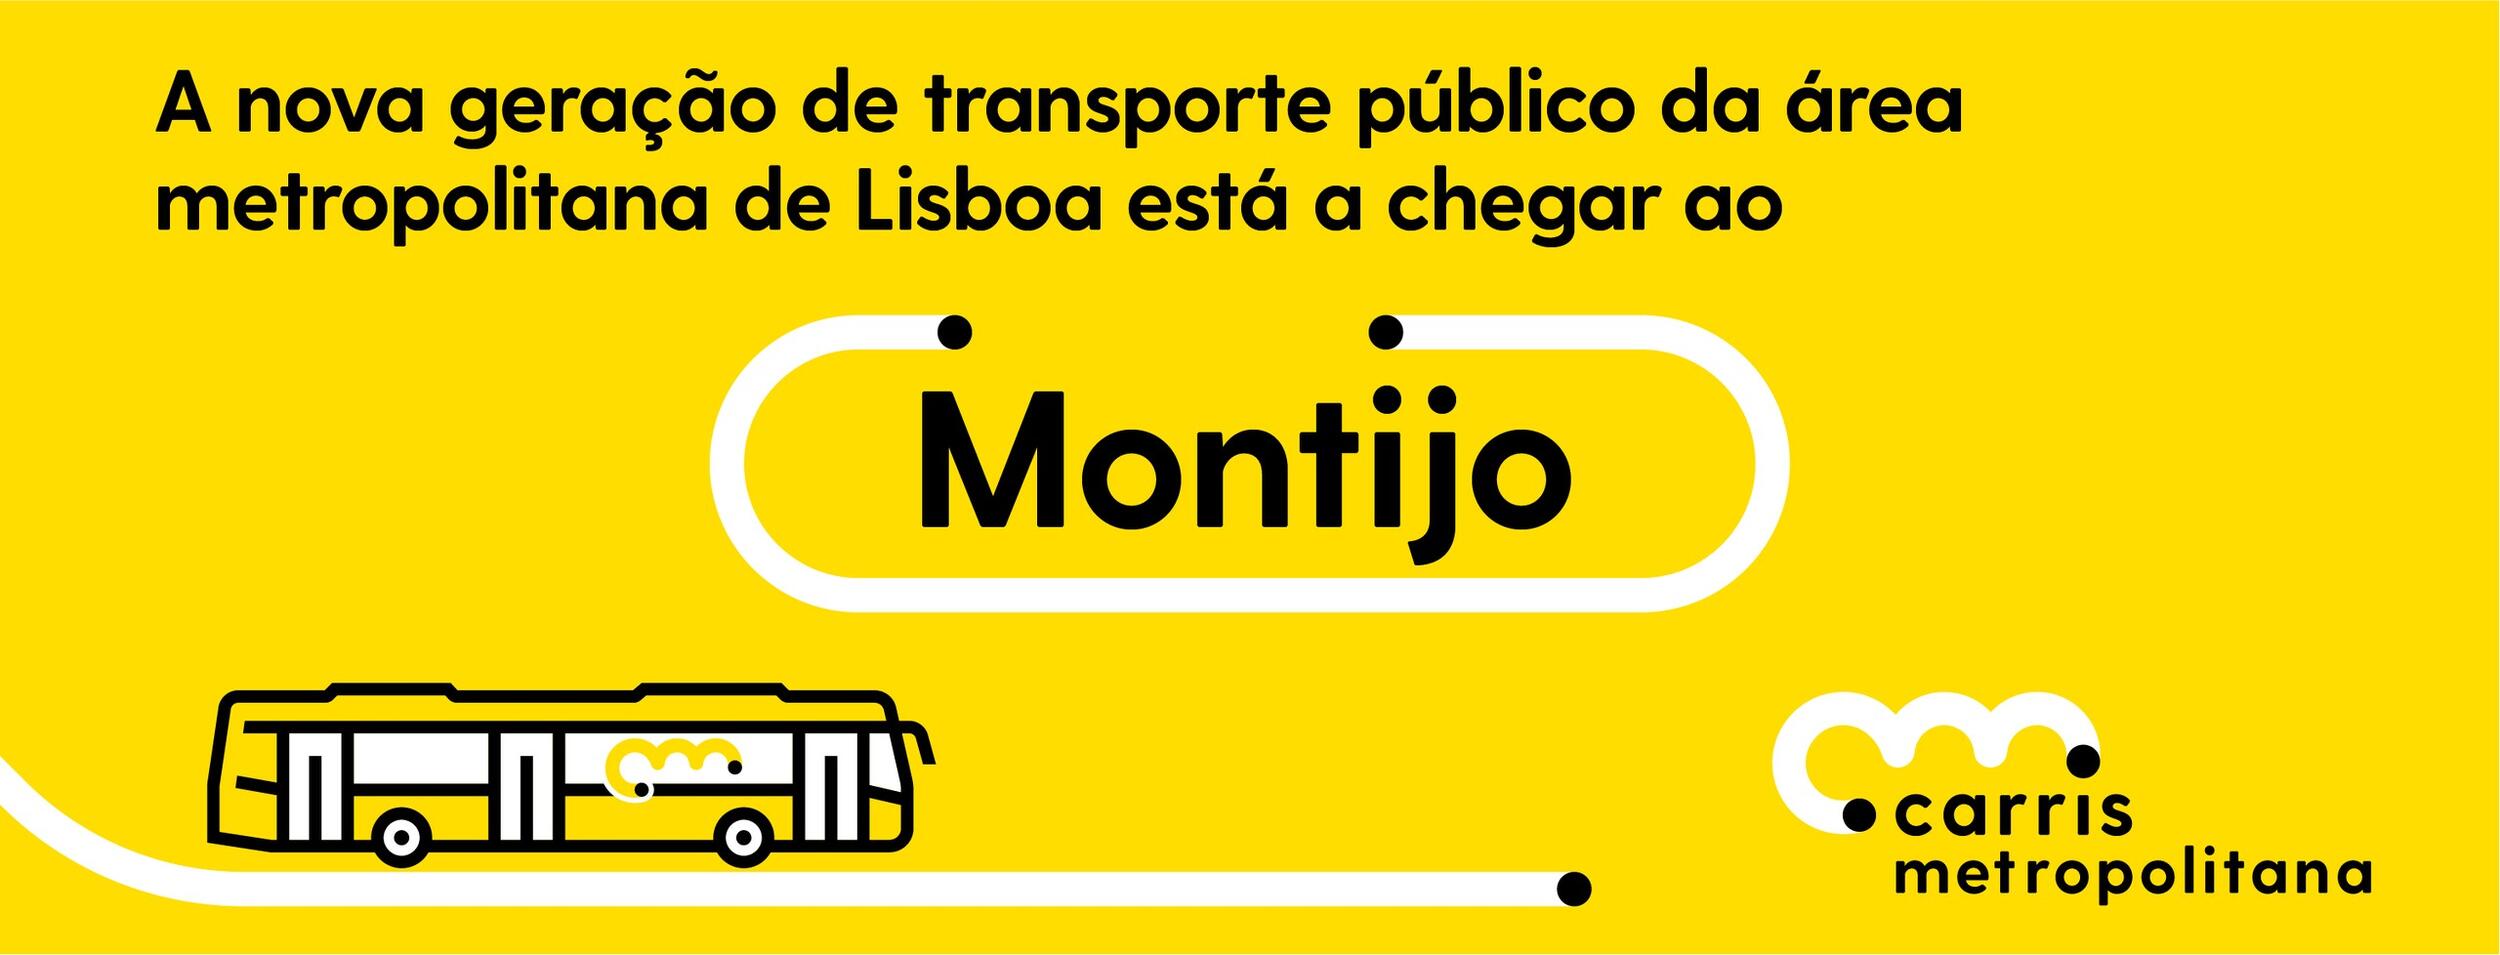 A Carris Metropolitana está a chegar ao Montijo- Novas Linhas